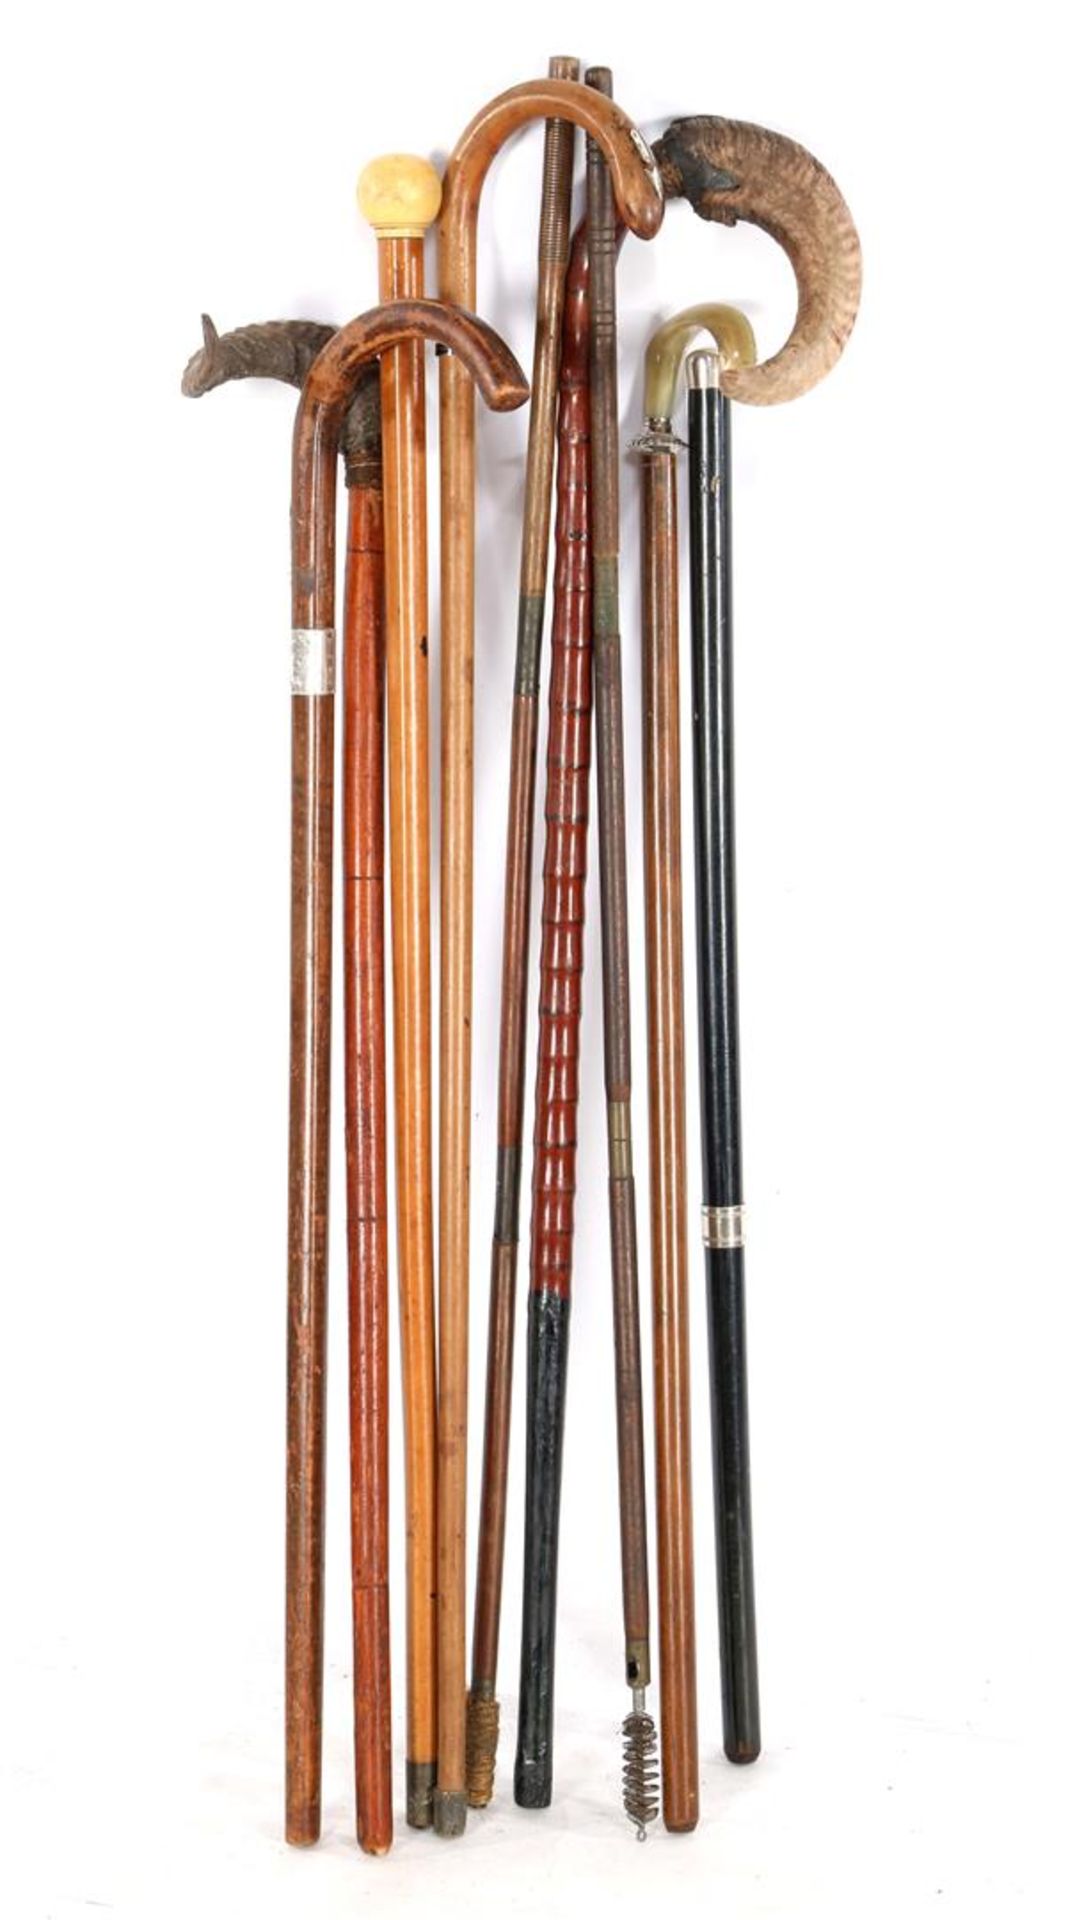 9 various walking sticks